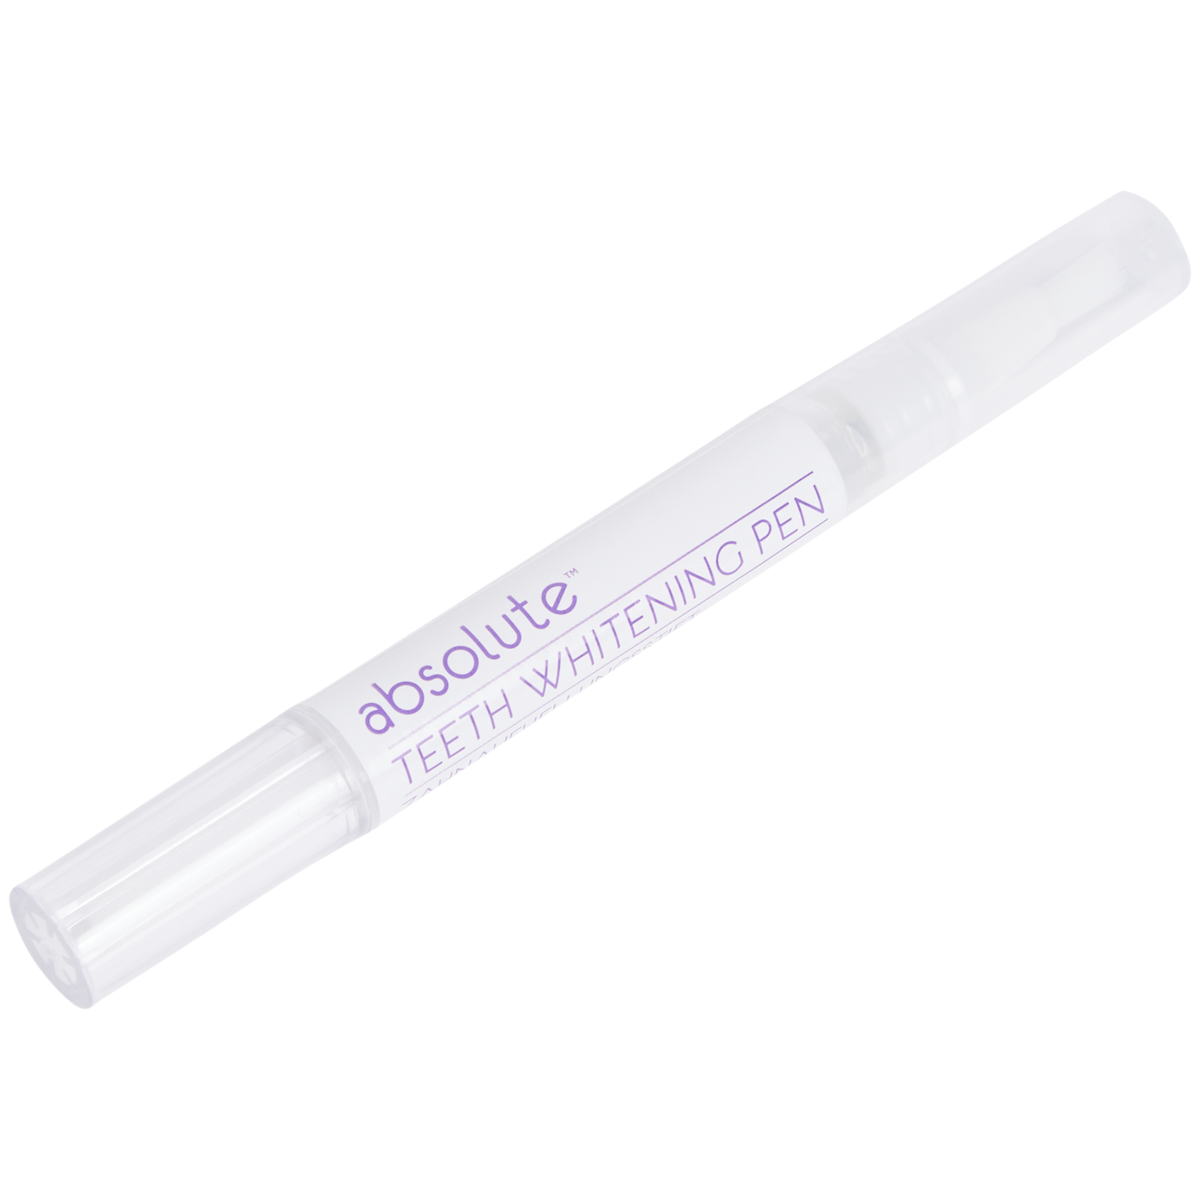 Absolute White gel pen